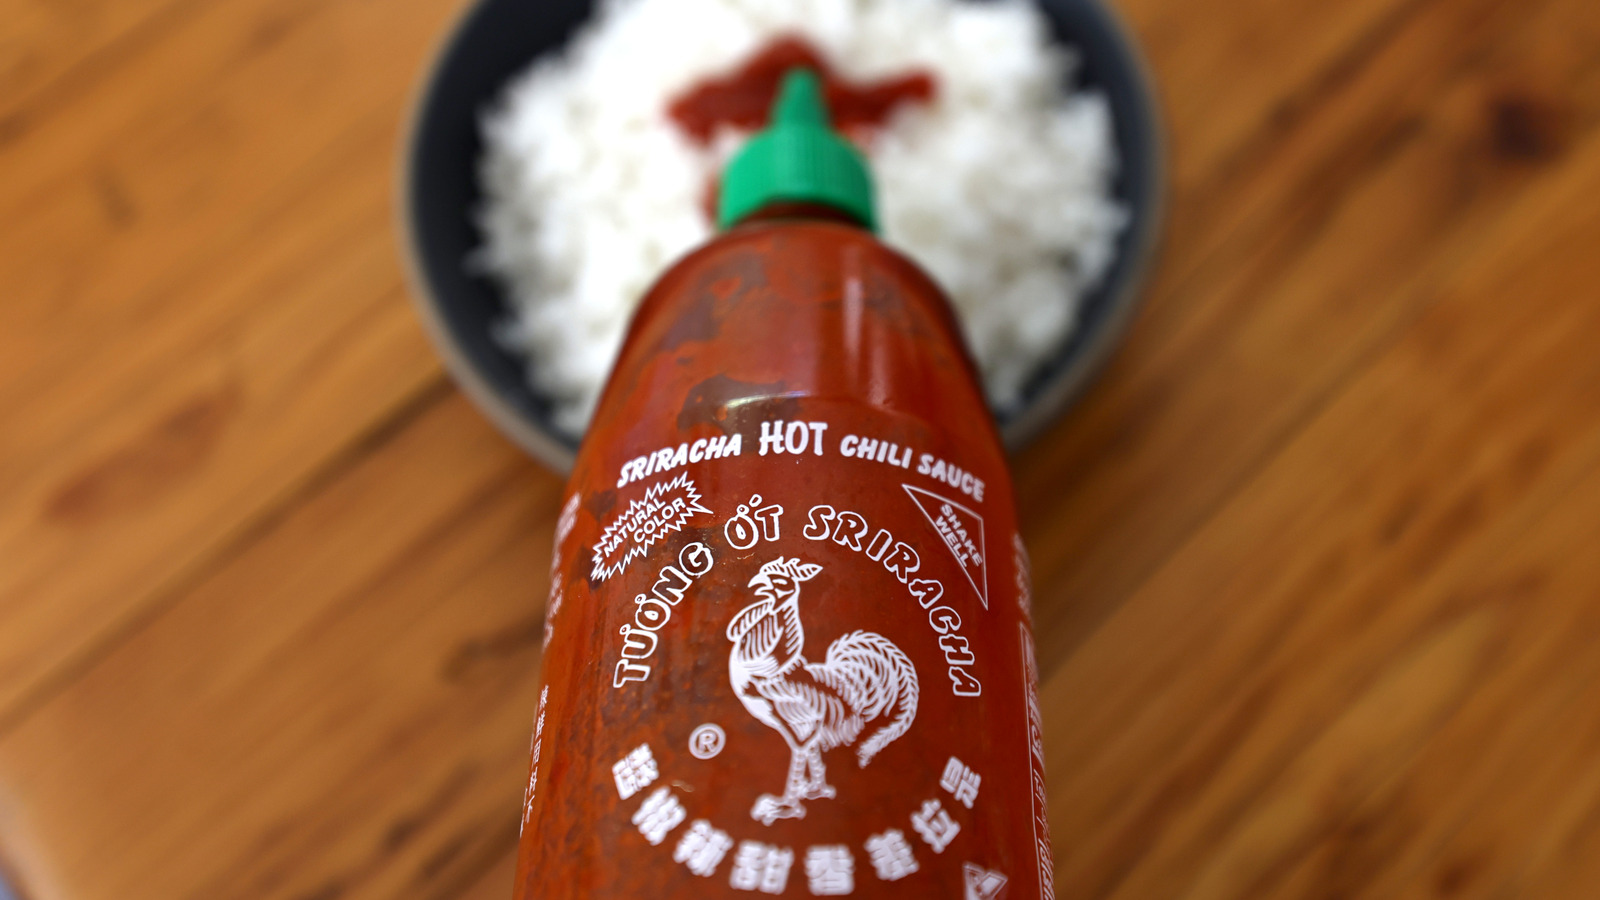 Gluten-Free Sriracha Hot Chili Sauce - Kikkoman Home Cooks